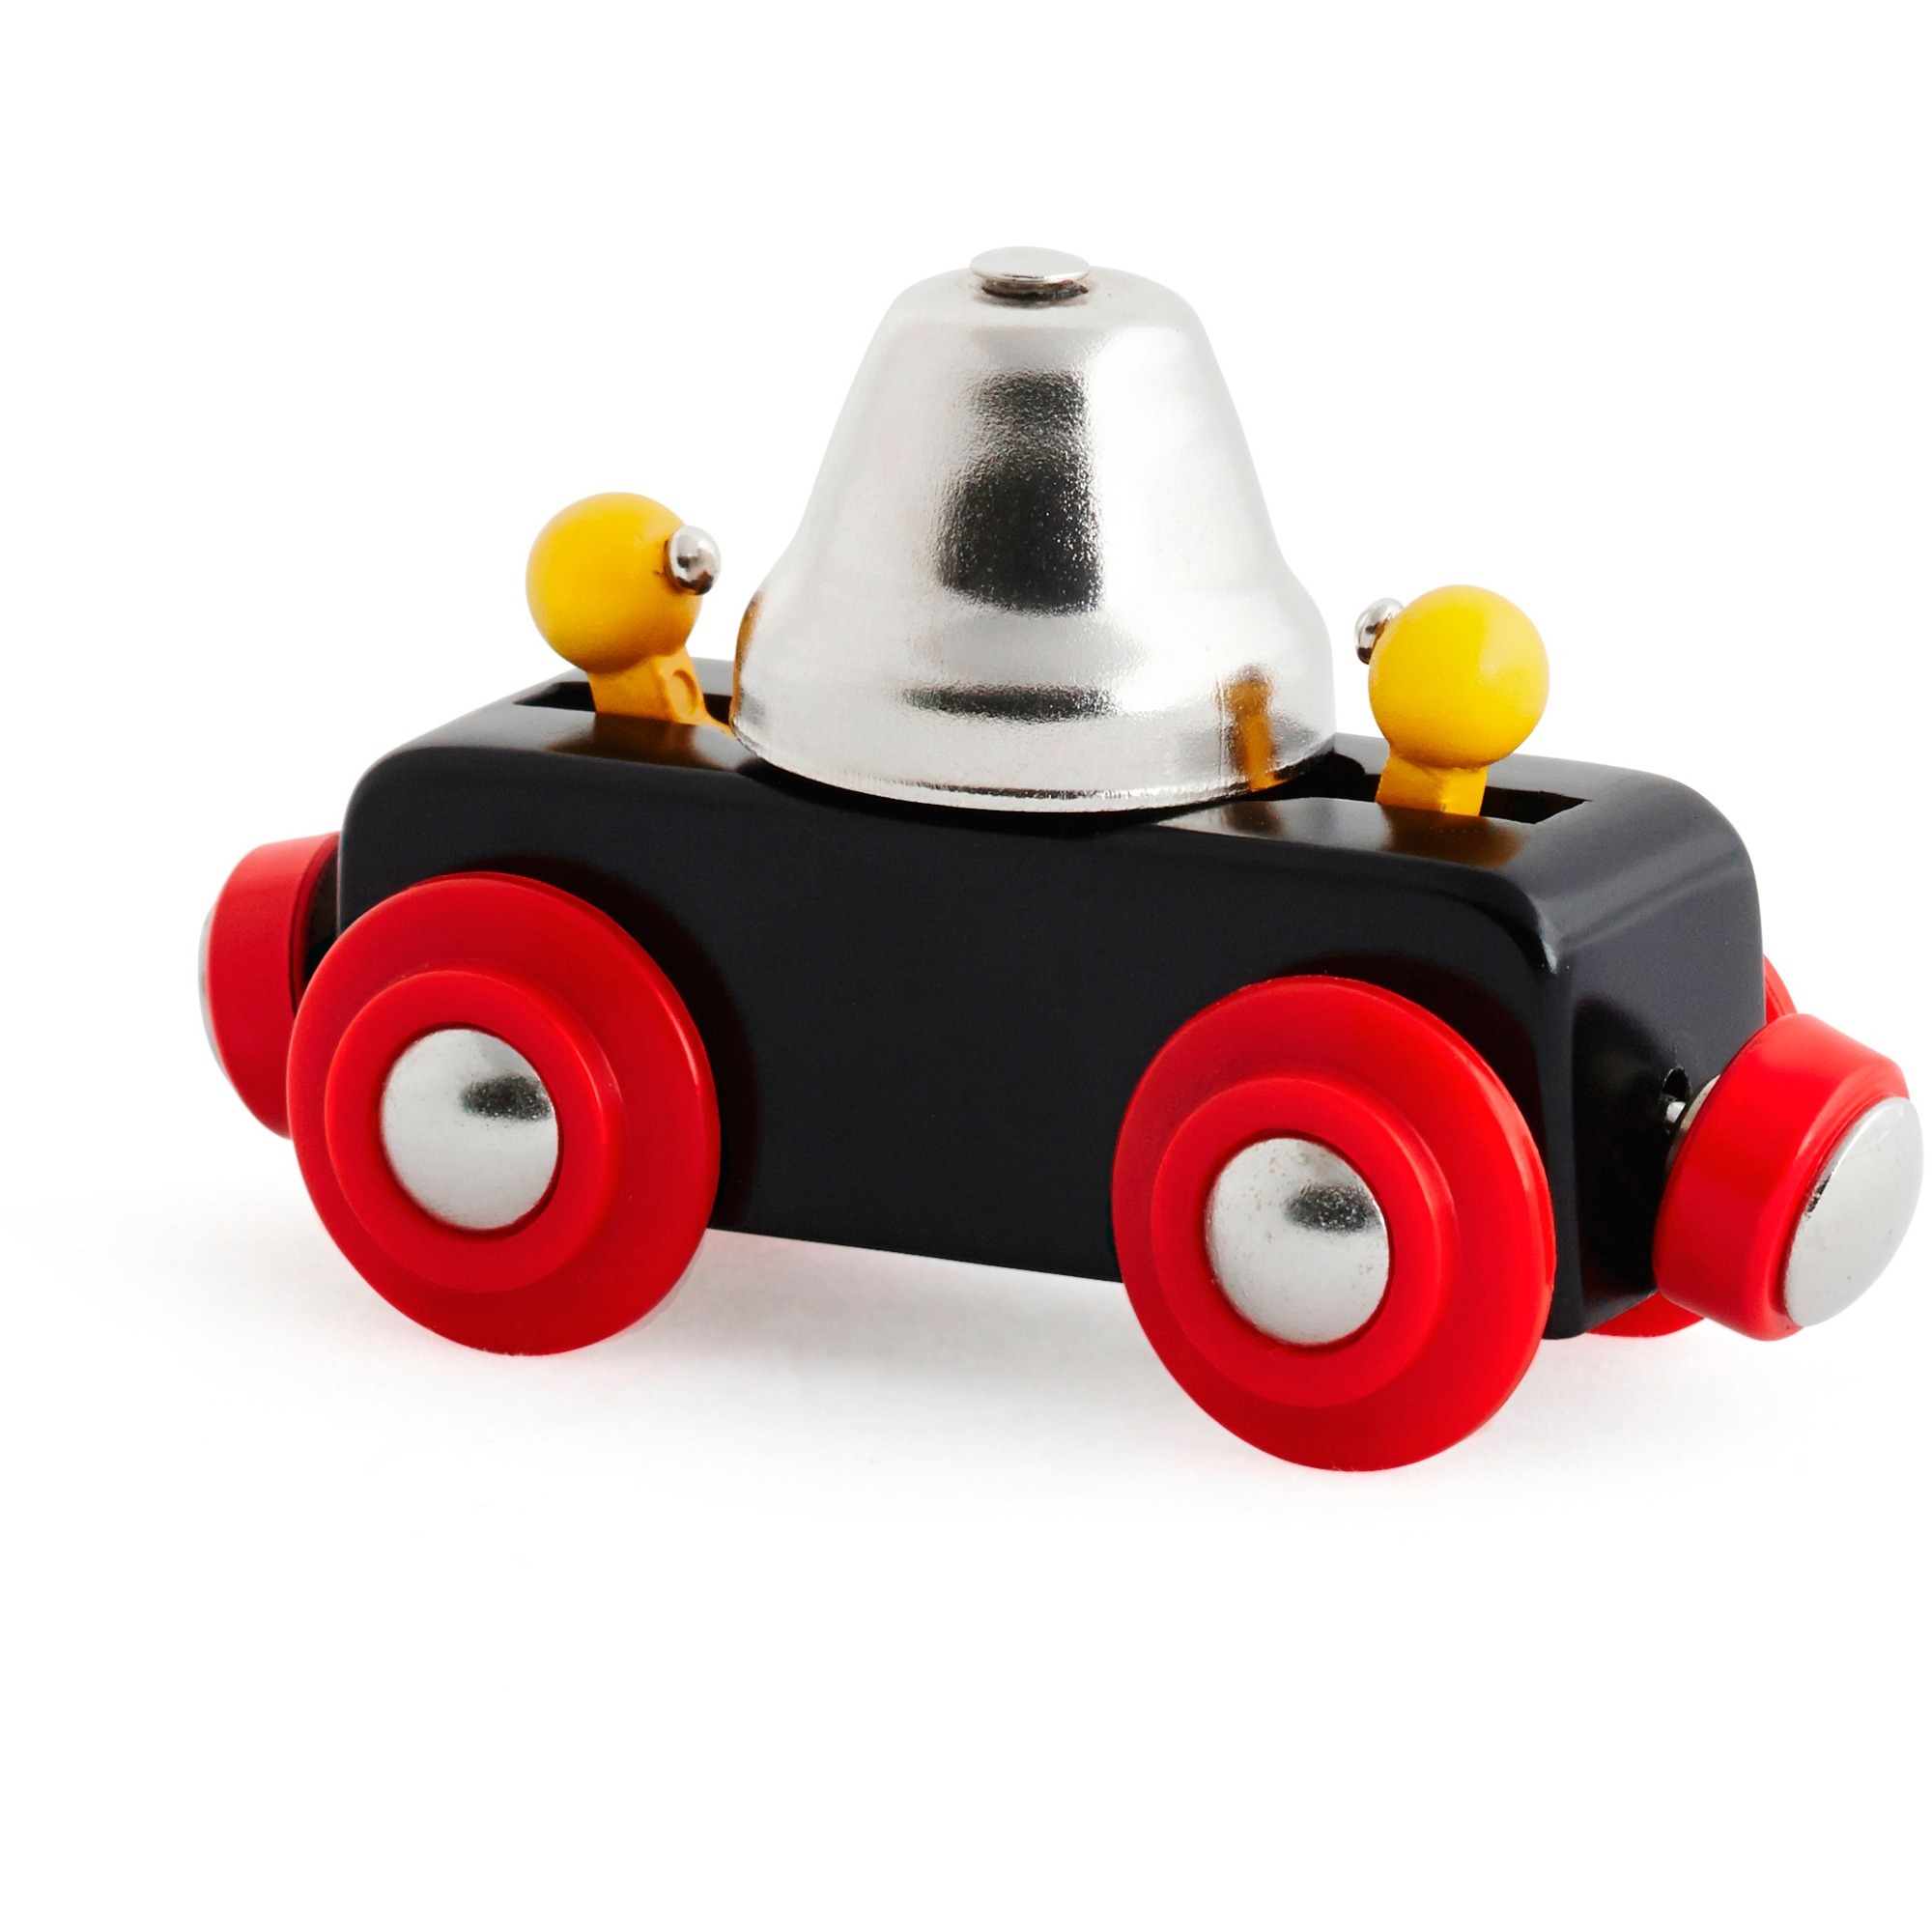 Image of Alternate - World Glockenwagen, Spielfahrzeug online einkaufen bei Alternate